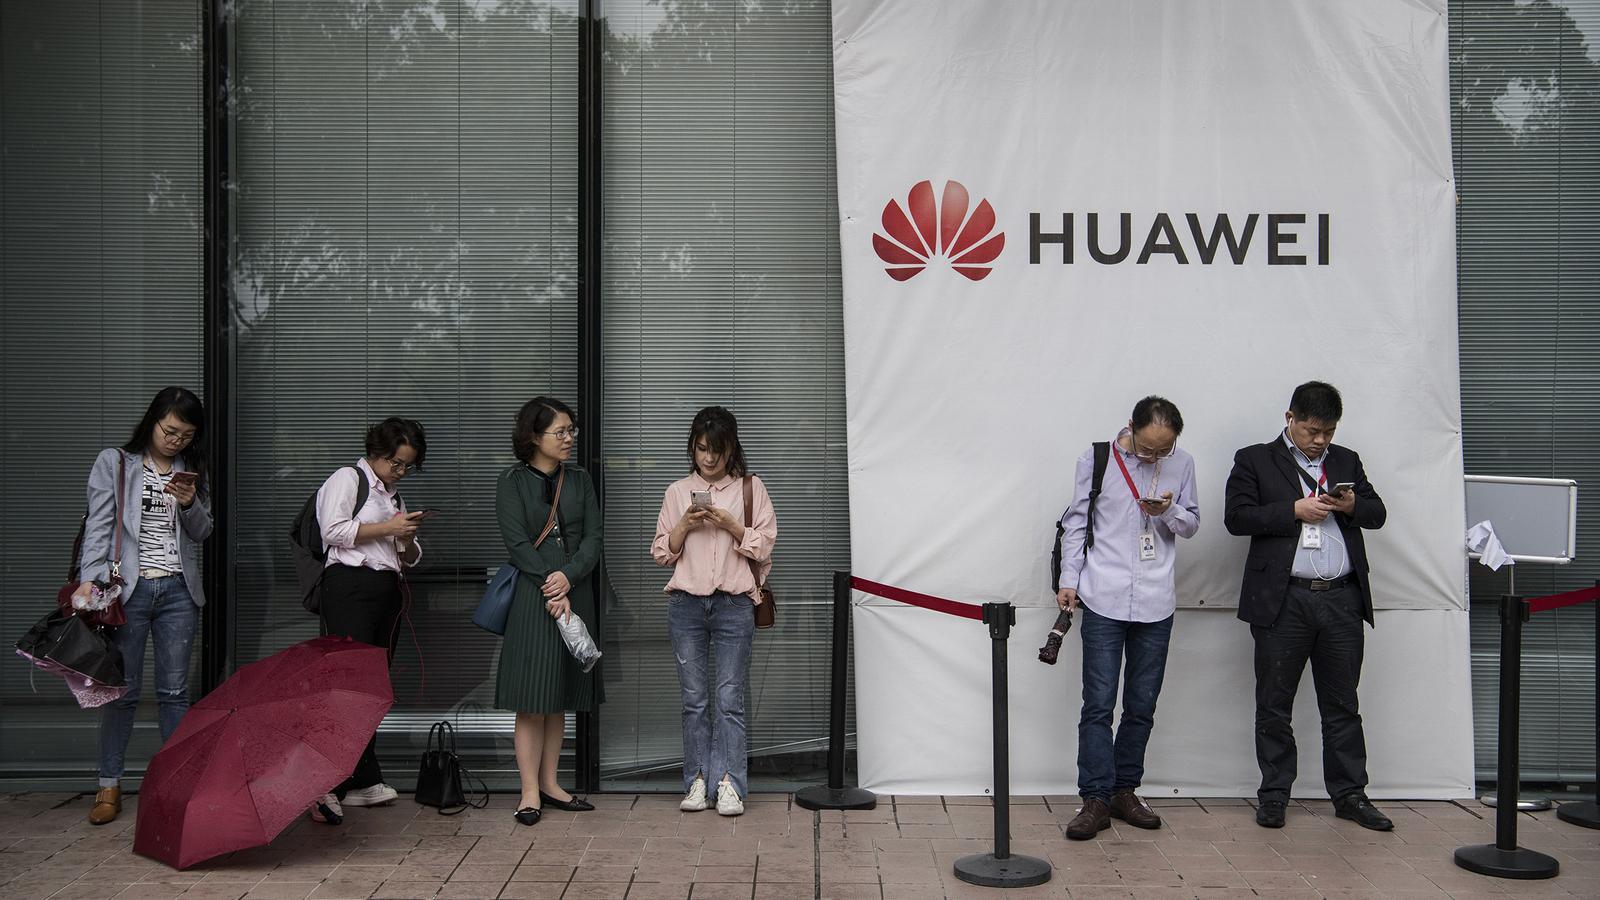 Treballadors de Huawei en una de les seves plantes a la Xina / Kevin Frayer/ Getty